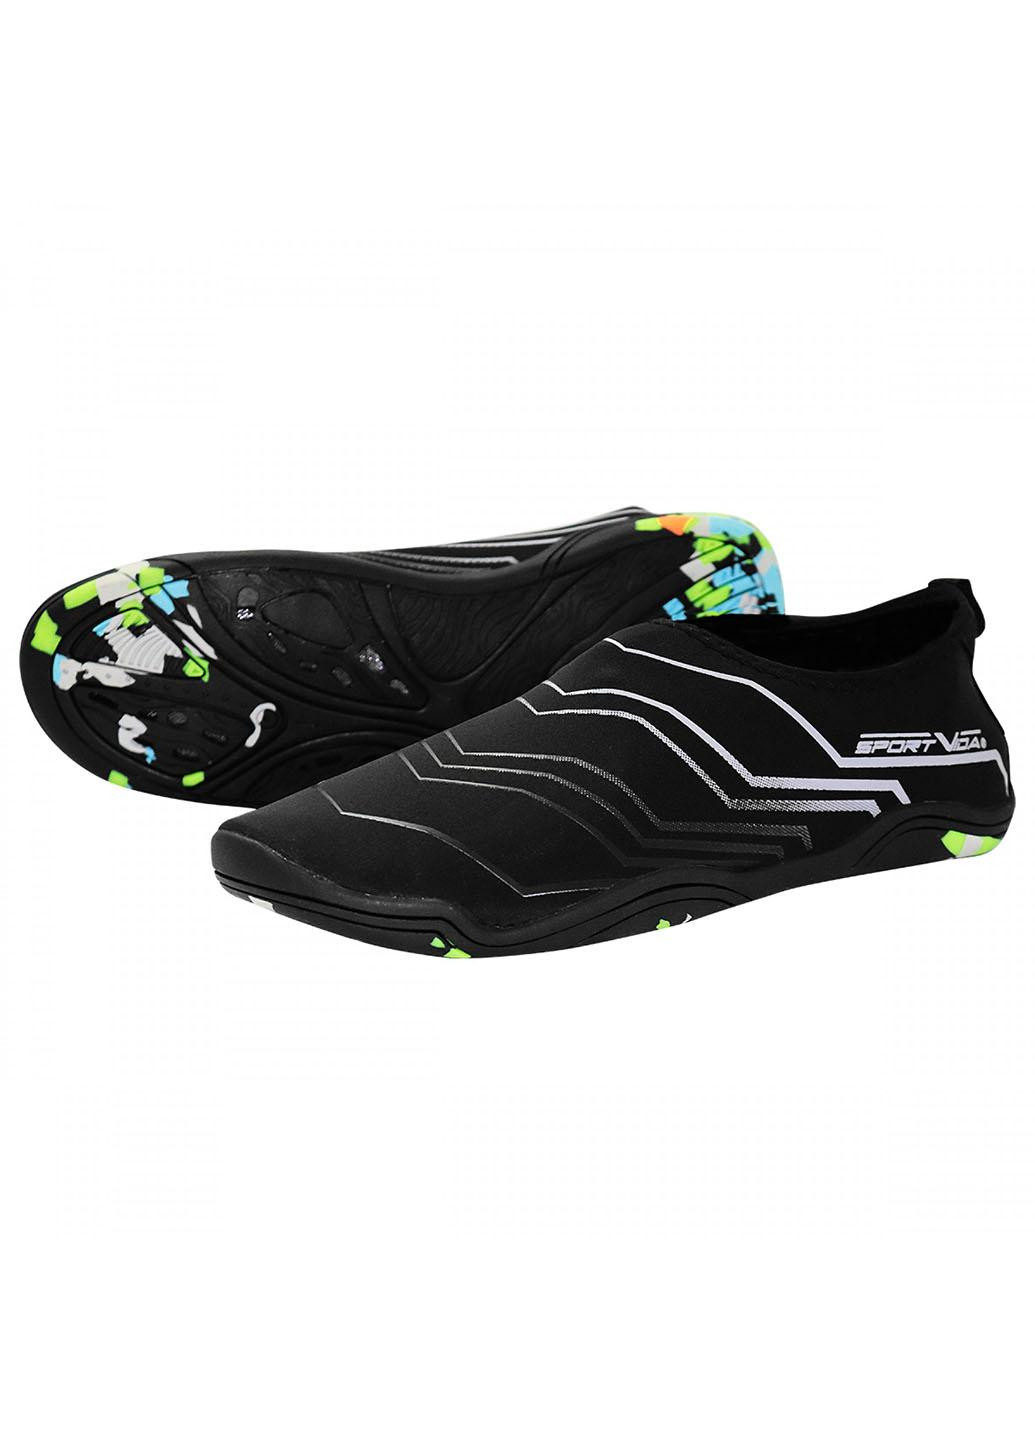 Обувь для пляжа и кораллов (аквашузы) SV-GY0006-R44 Size 44 Black/Grey SportVida (258486772)